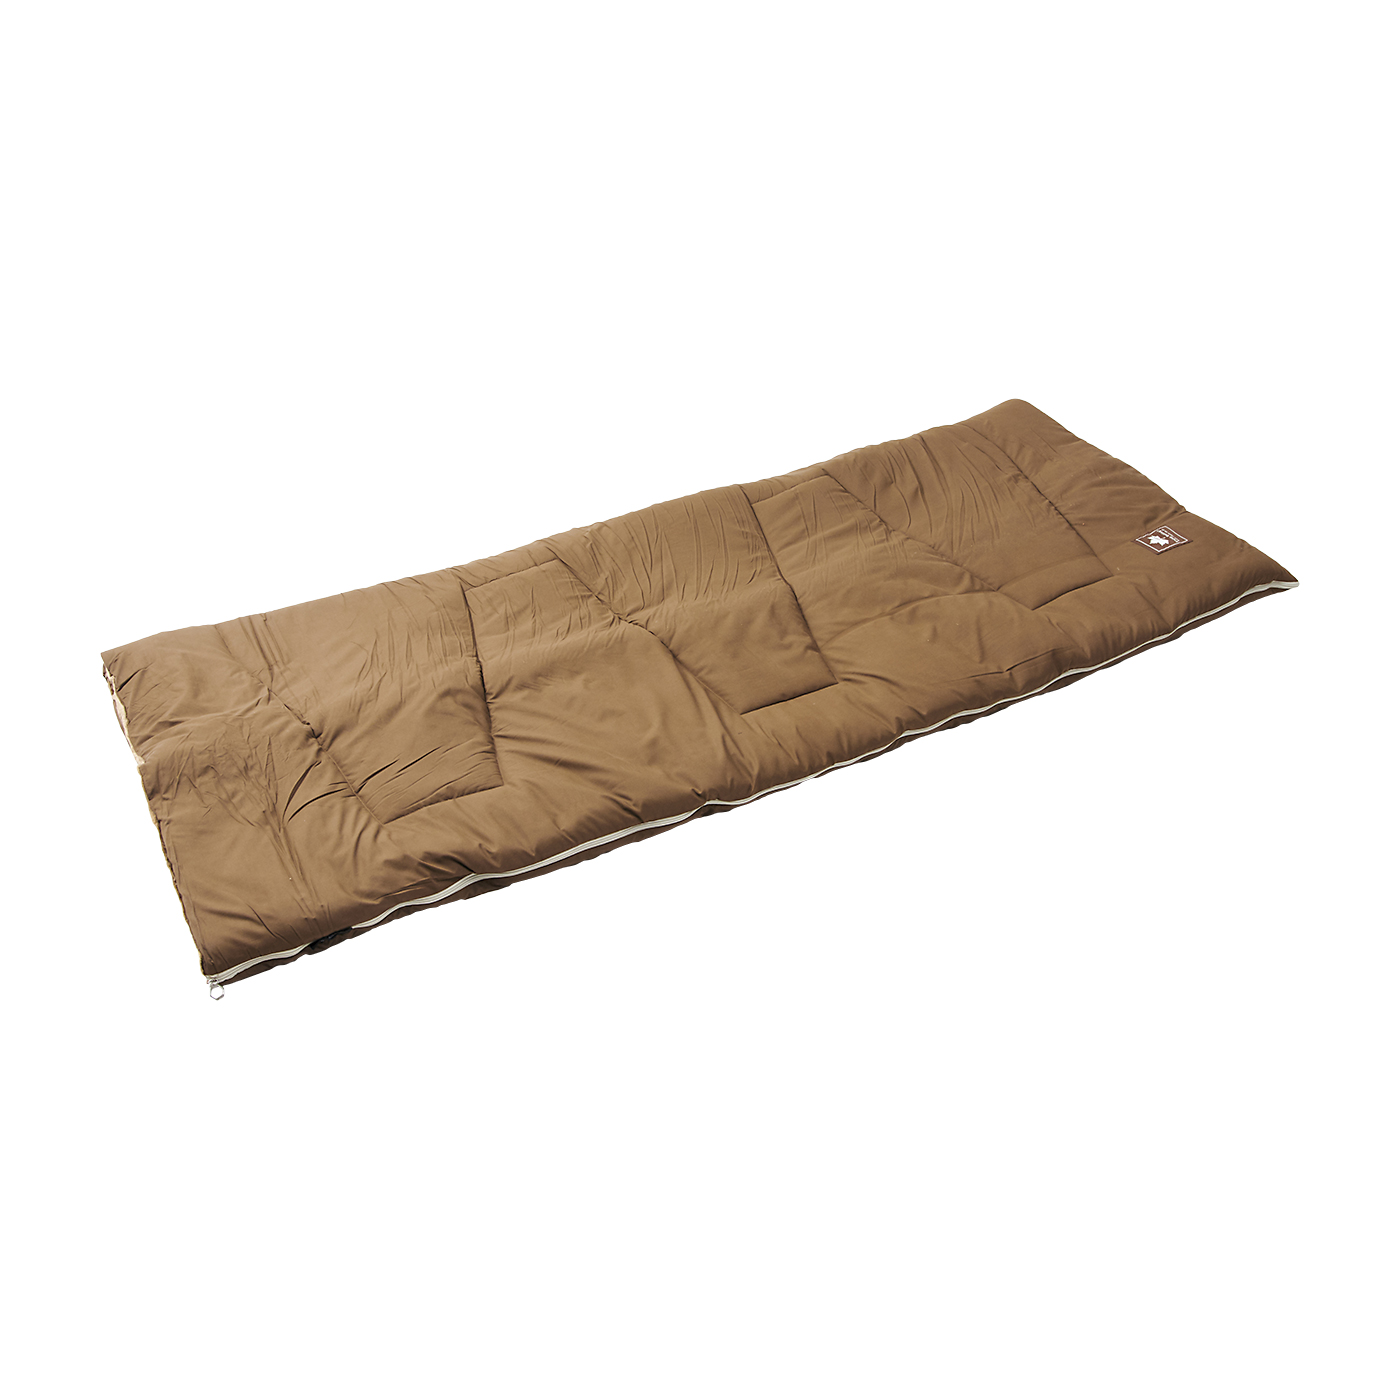 消費税無し 封筒型シュラフ 丸洗いソフトタッチシュラフ・-6 ロゴス 封筒型寝袋